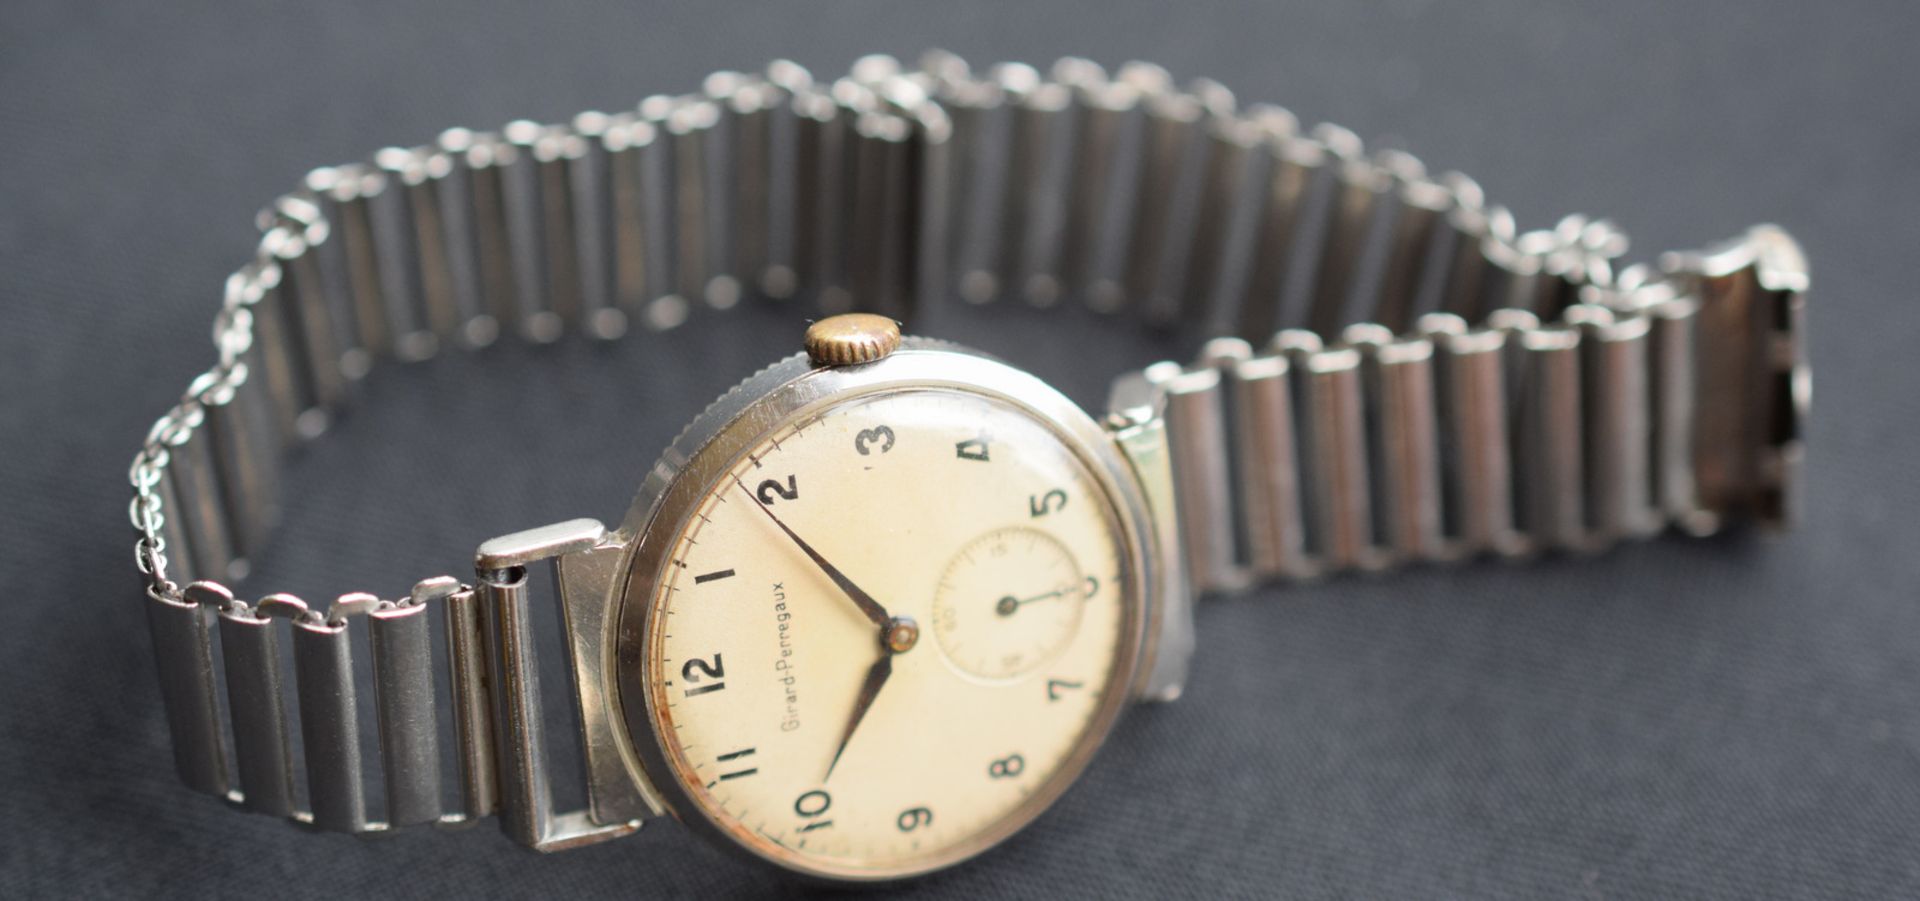 Girard Perregaux Vintage Wristwatch - Image 3 of 4